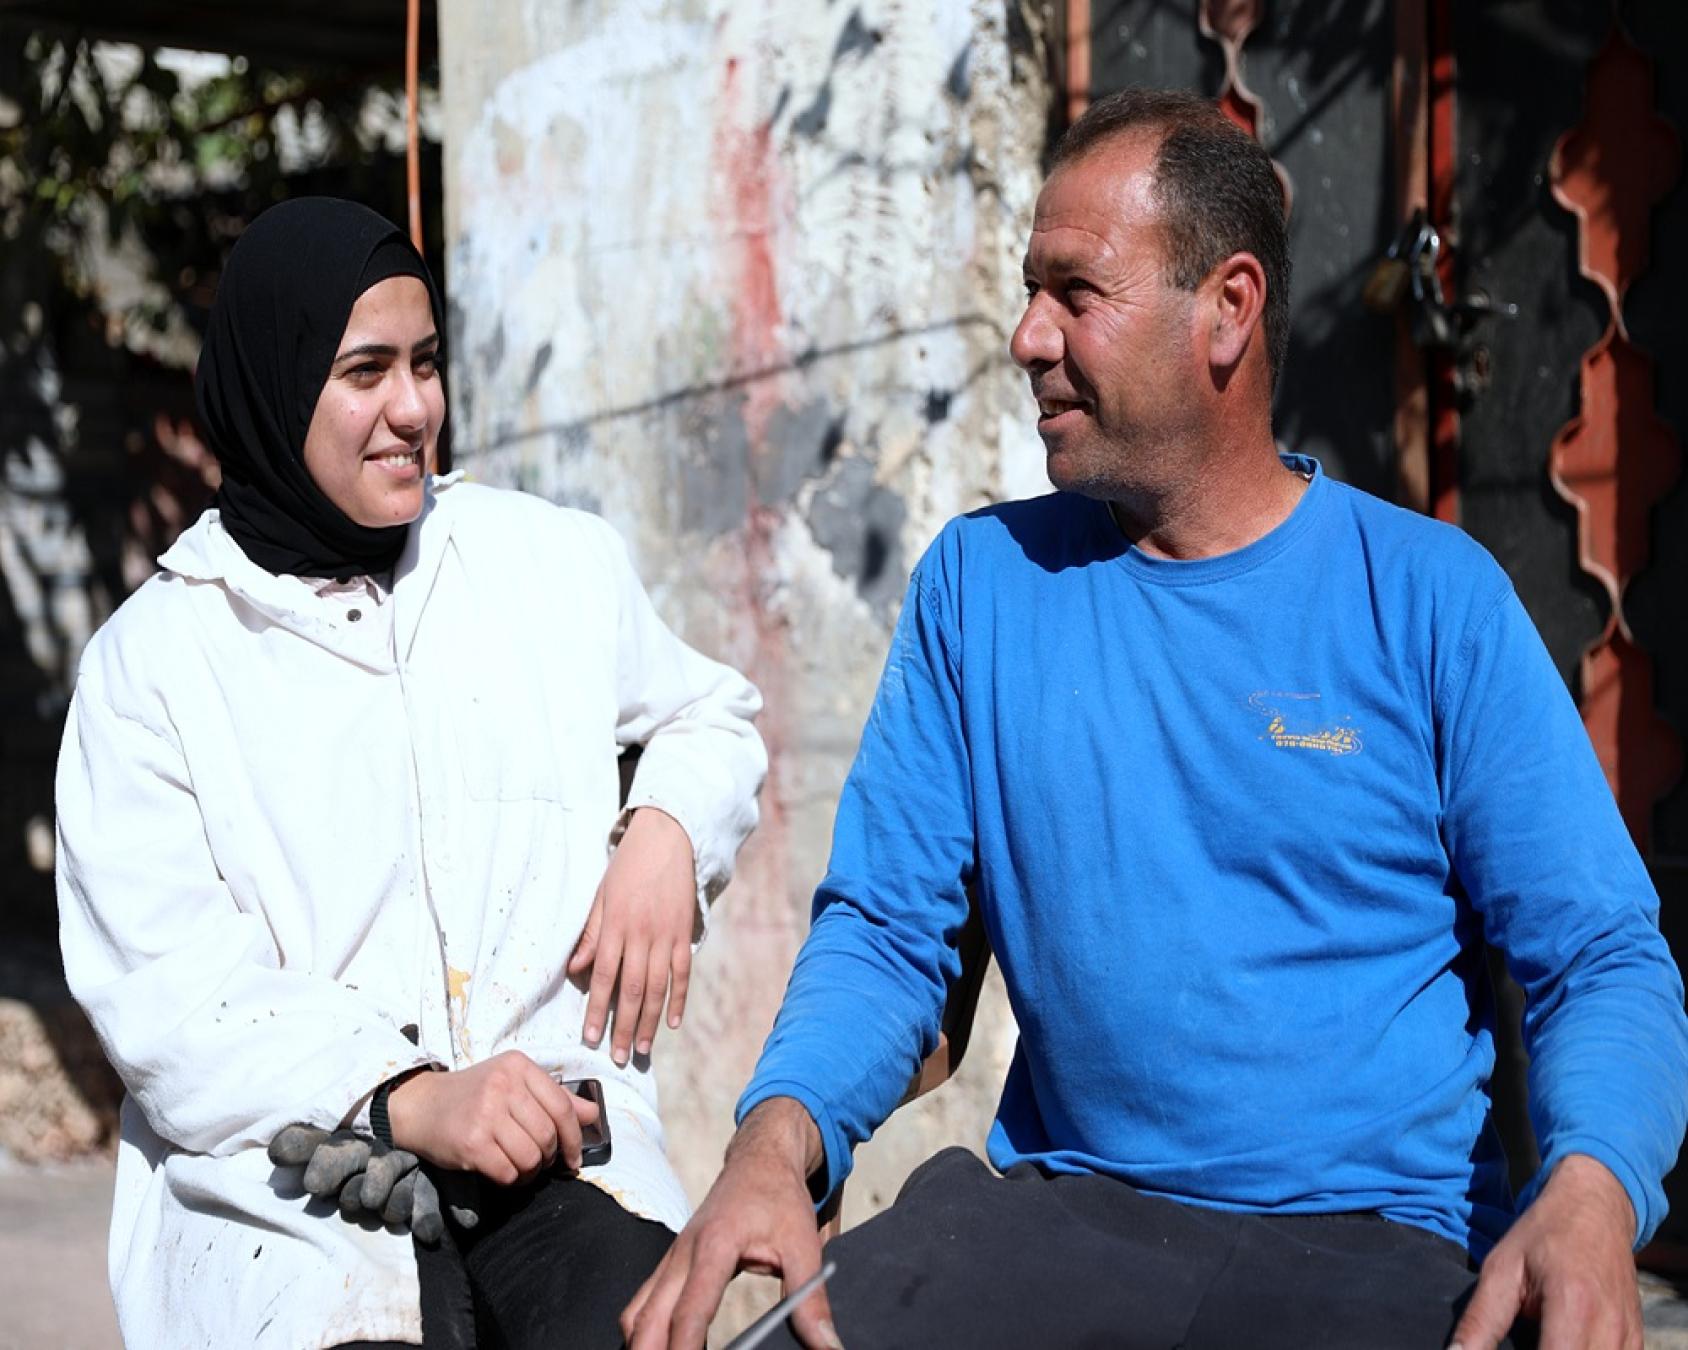 روان ووالدها عماد الذي يعمل معها بدوام جزئي في ورشة عمل في قرية كفر اللبد، في طولكرم، فلسطين في 18 يناير. الصورة: هيئة الأمم المتحدة للمرأة/سامح كريم.